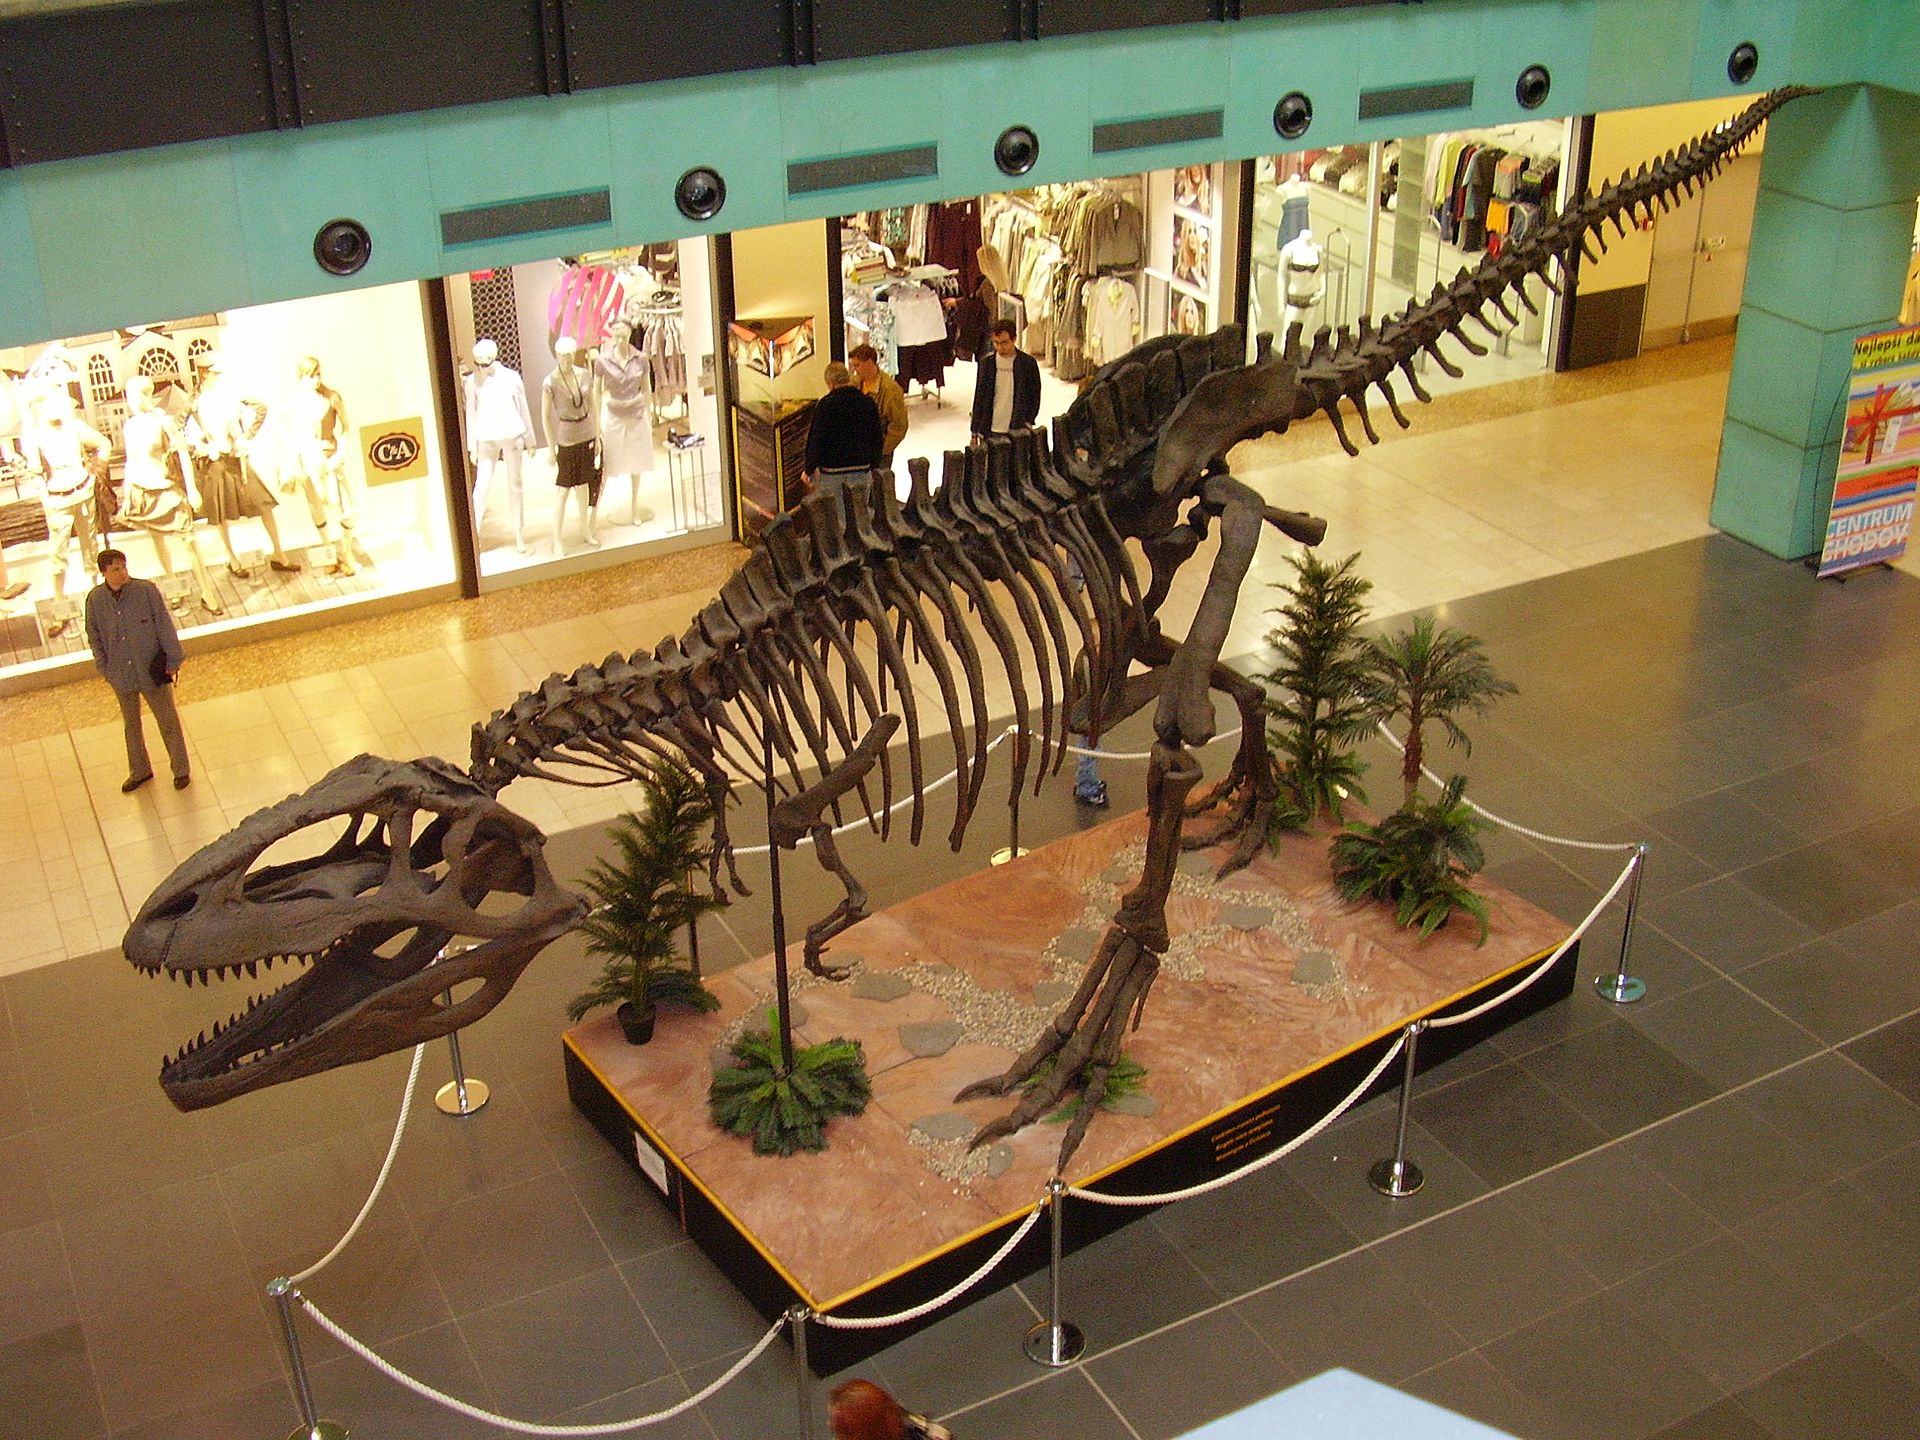 Rekonstruovaná kostra obřího karcharodontosaurida druhu Giganotosaurus carolinii, vystavená v roce 2007 v pražském nákupním centru Chodov. Obří kostra má špatně smontované přední končetiny, ty by měly ve skutečnosti směřovat „dlaněmi k sobě“. Délka l